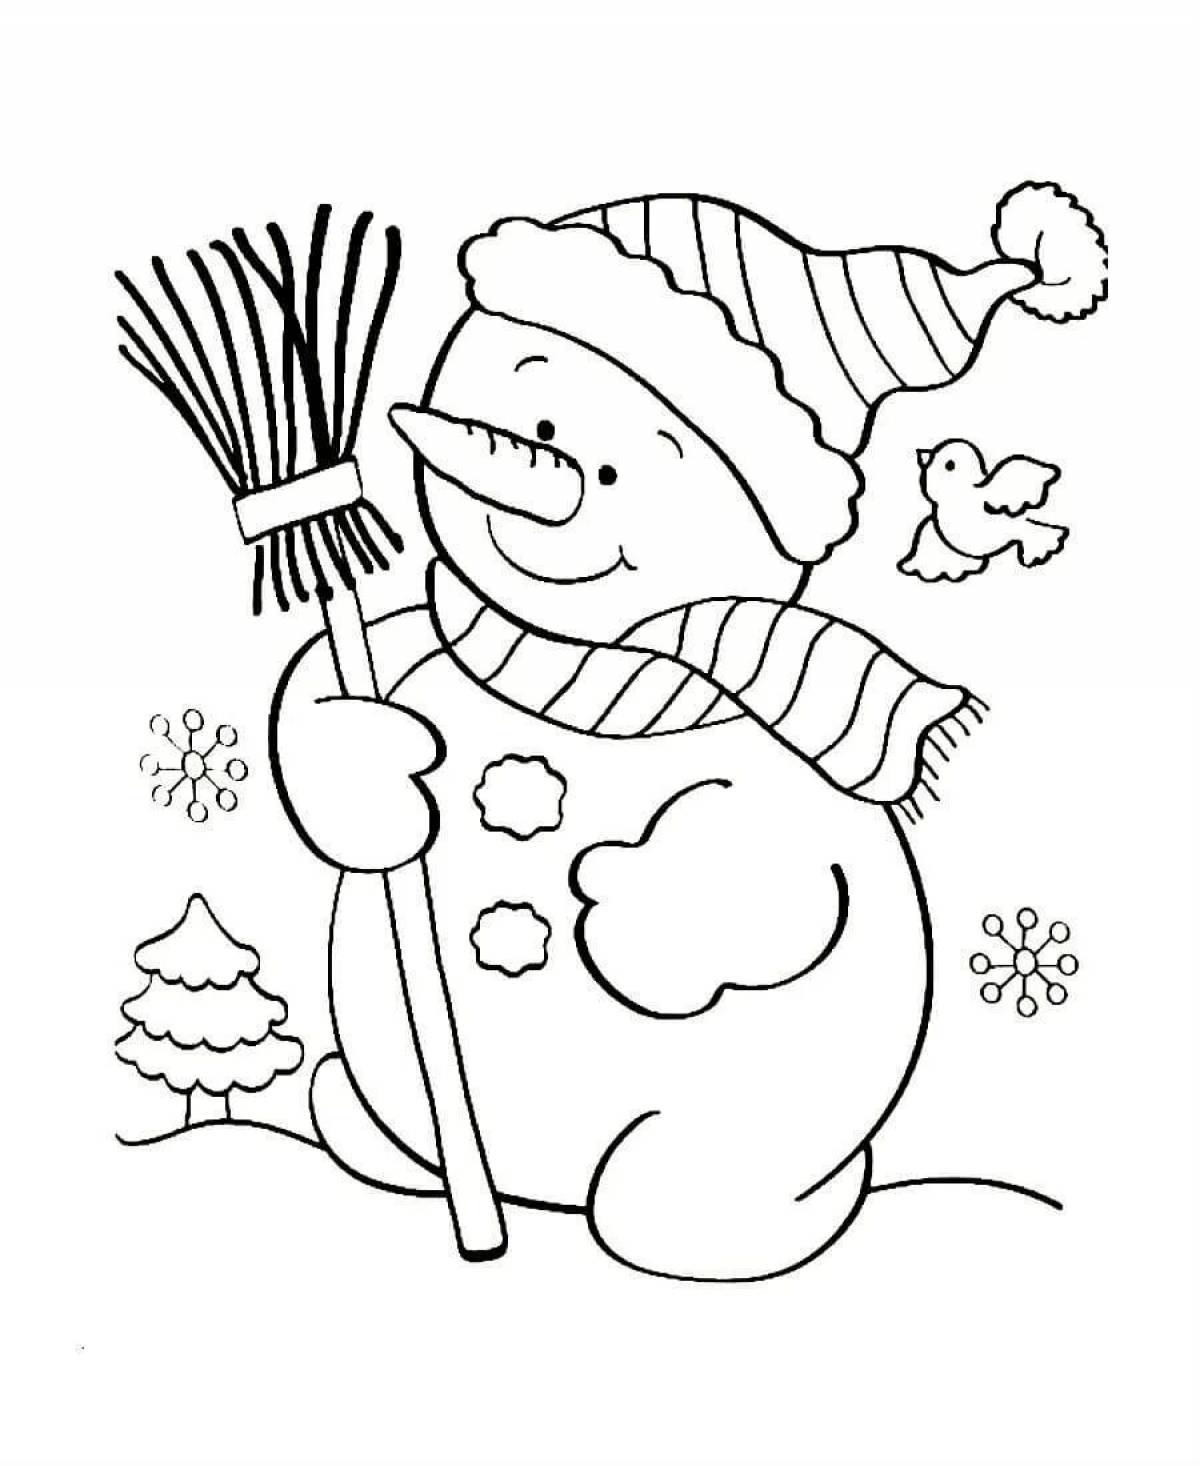 Новогодние раскраски для детей: Снеговик